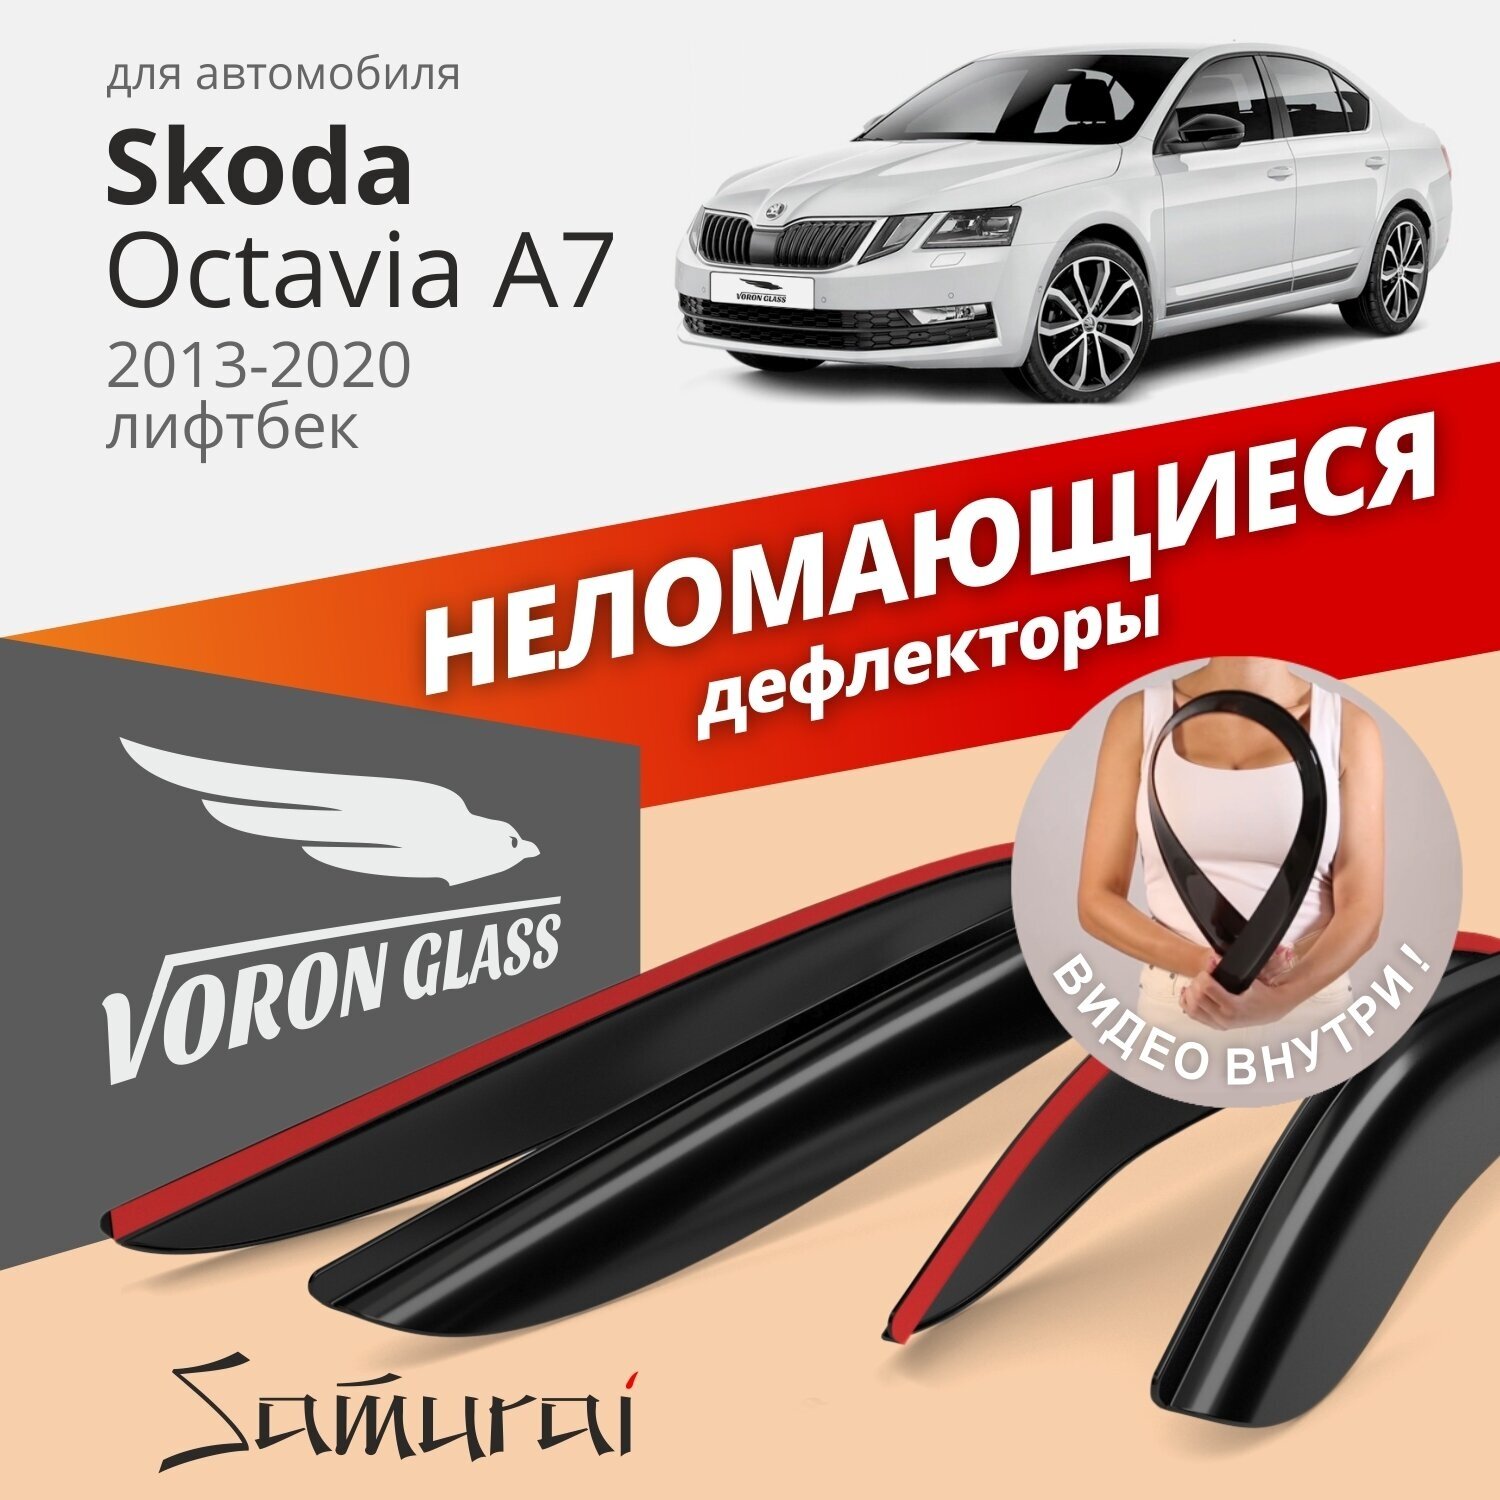 Дефлектор окон Voron Glass Samurai DEF00557 для Skoda Octavia